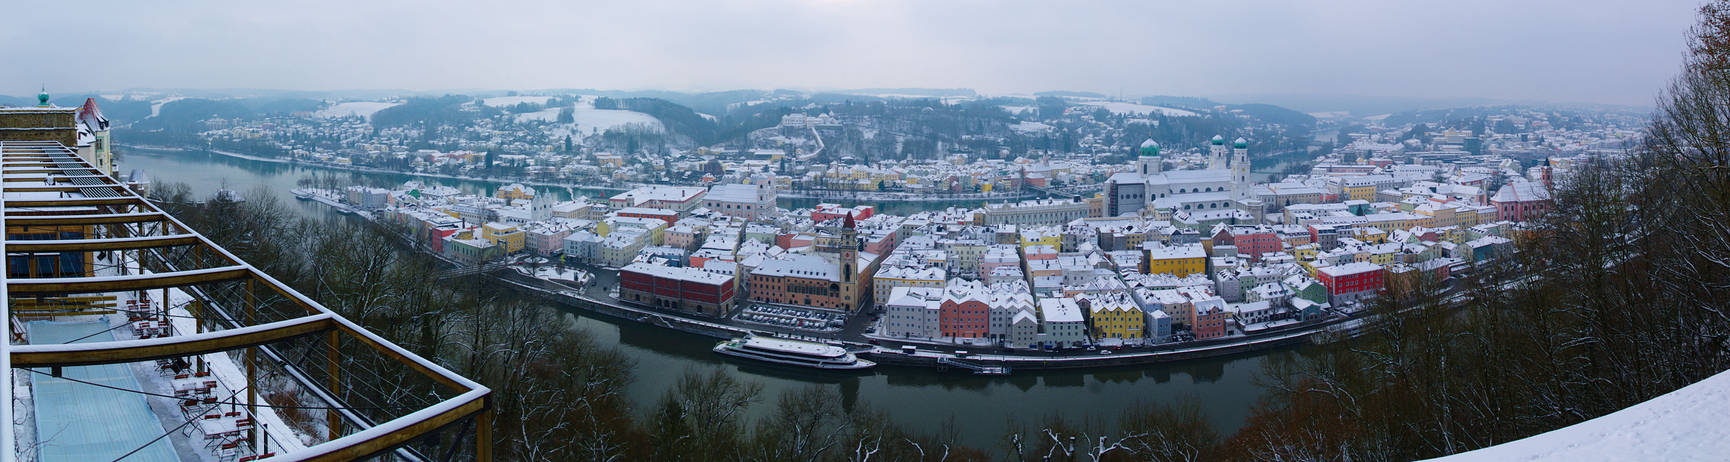 Passau Cityscape I